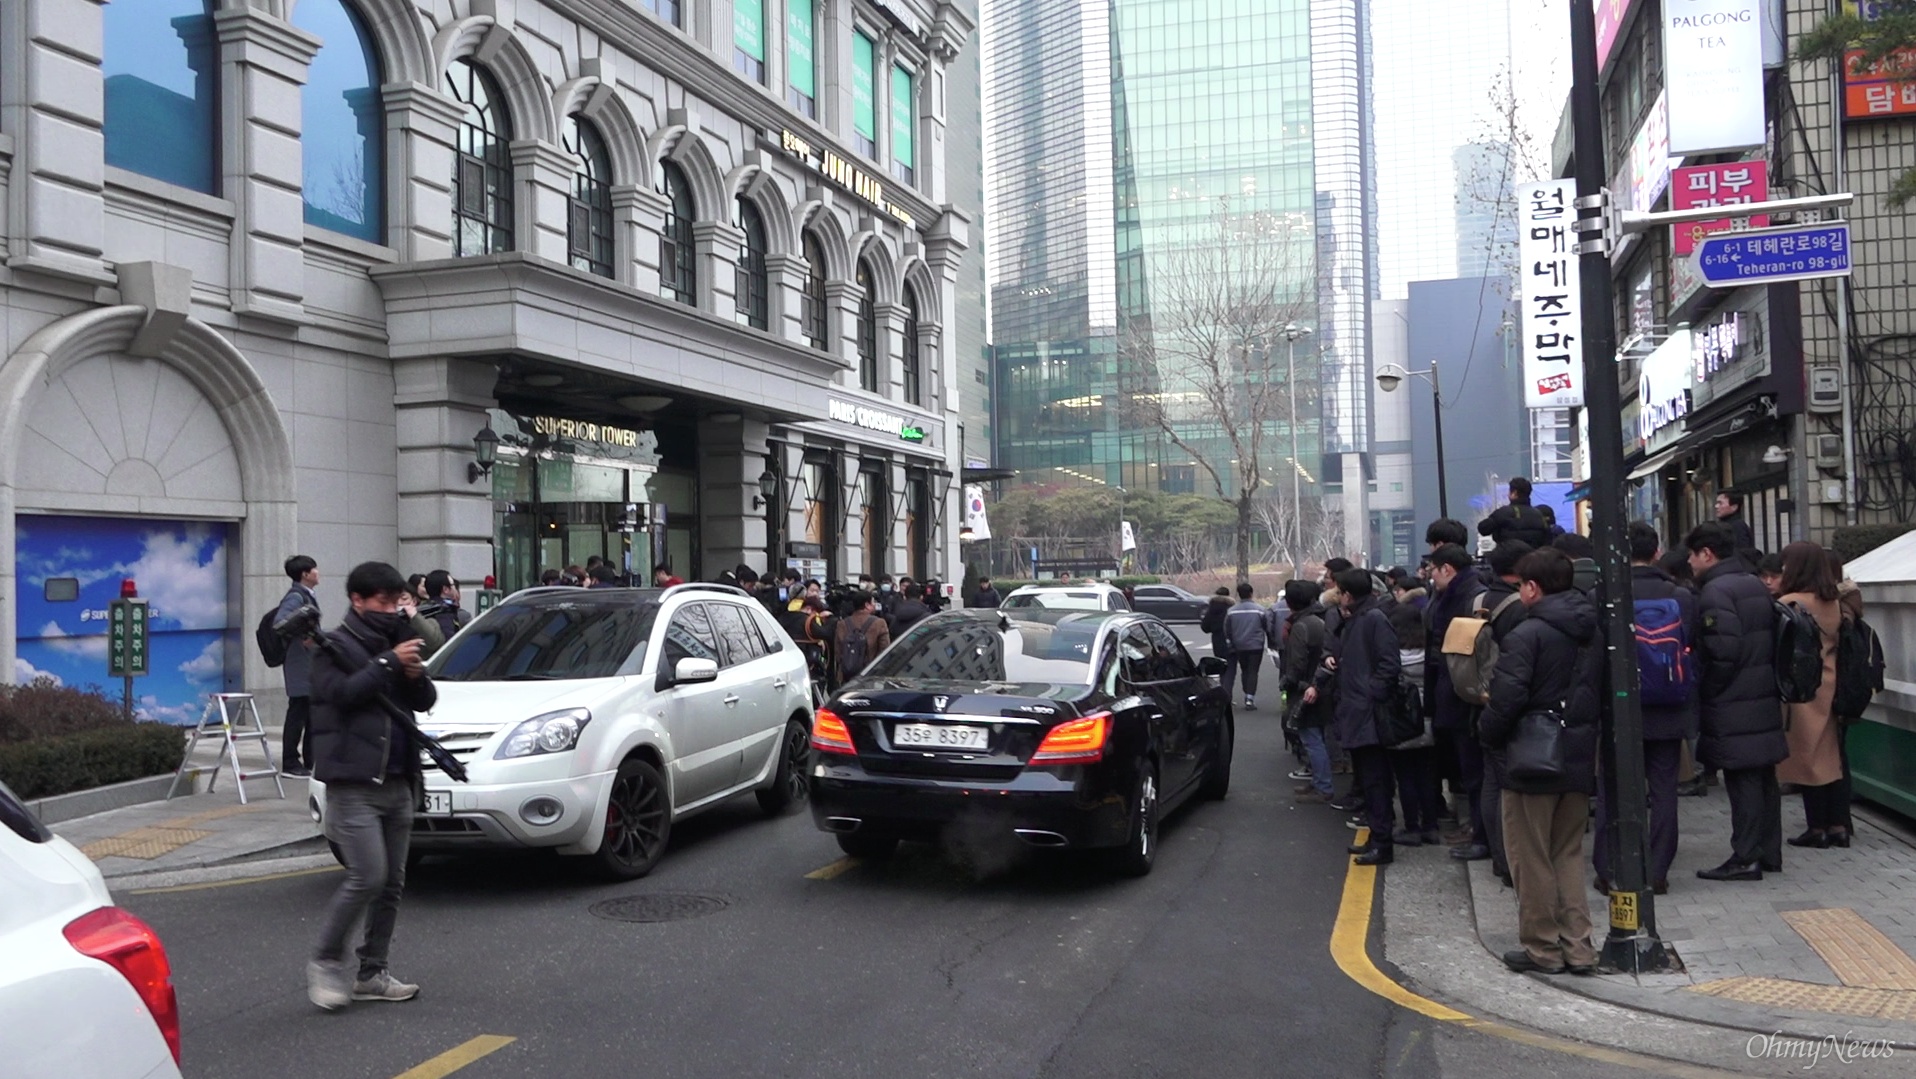 2018년 1월 23일, 서울 강남구 삼성동 소재 이명박 전 대통령 사무실 건물 앞. 기자들이 이명박 전 대통령의 기자회견을 취재하기 위해 모여 있다.